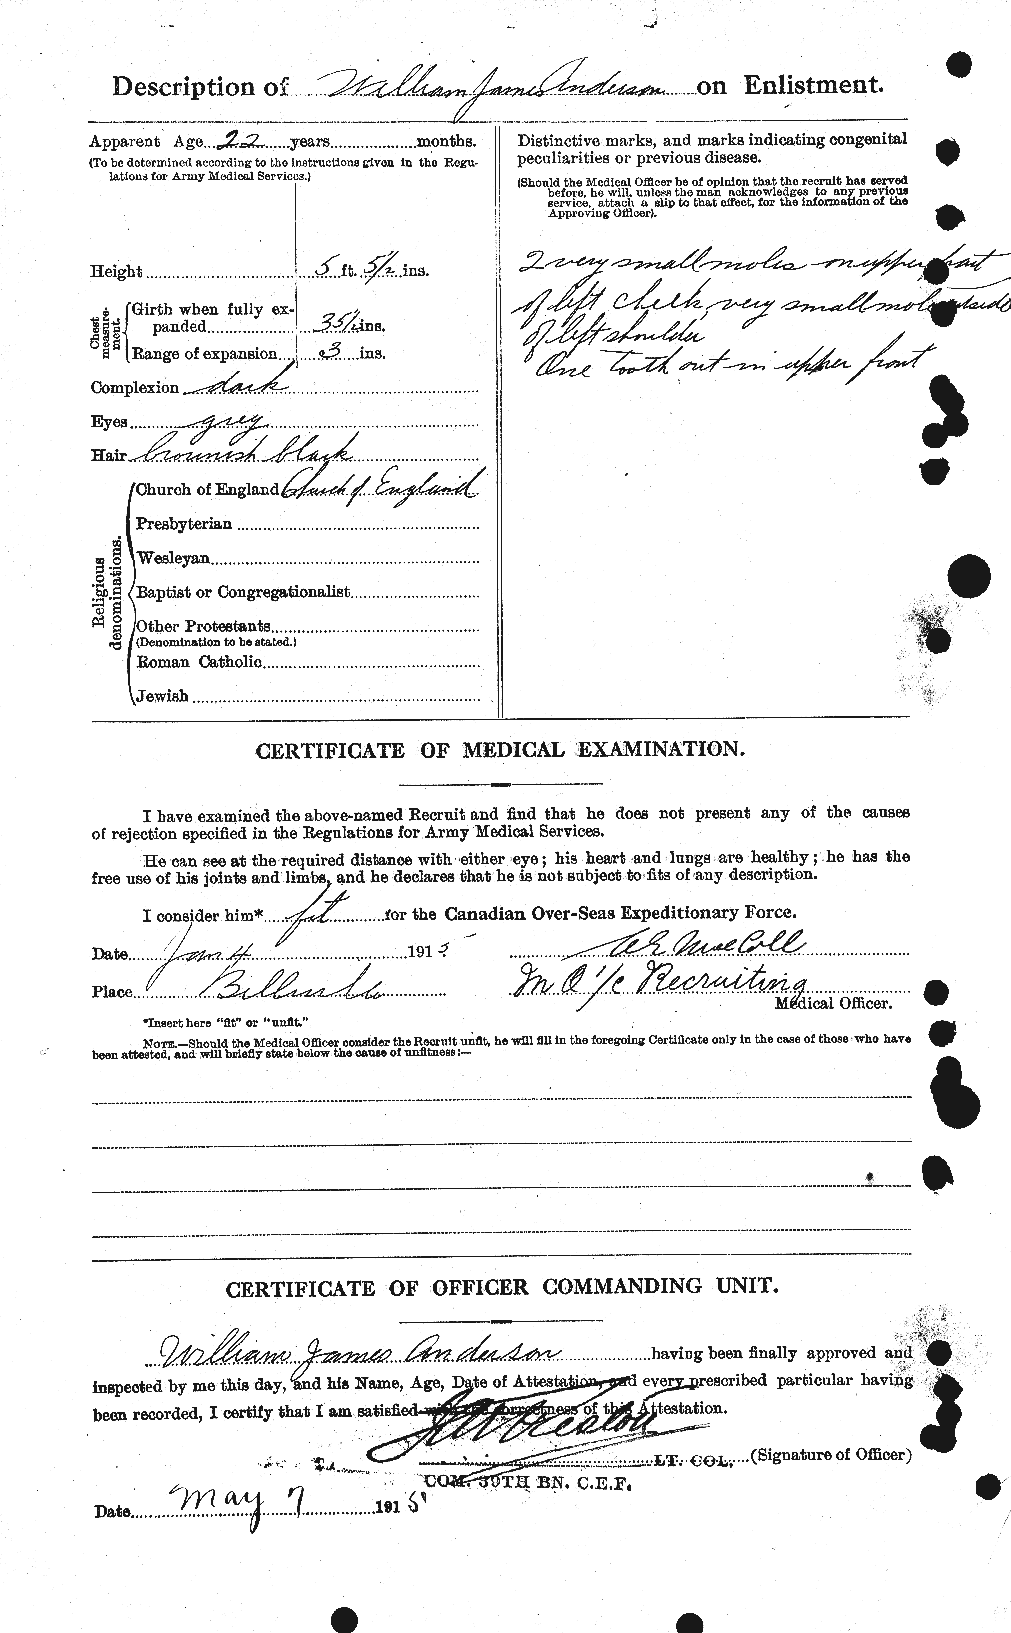 Dossiers du Personnel de la Première Guerre mondiale - CEC 210813b